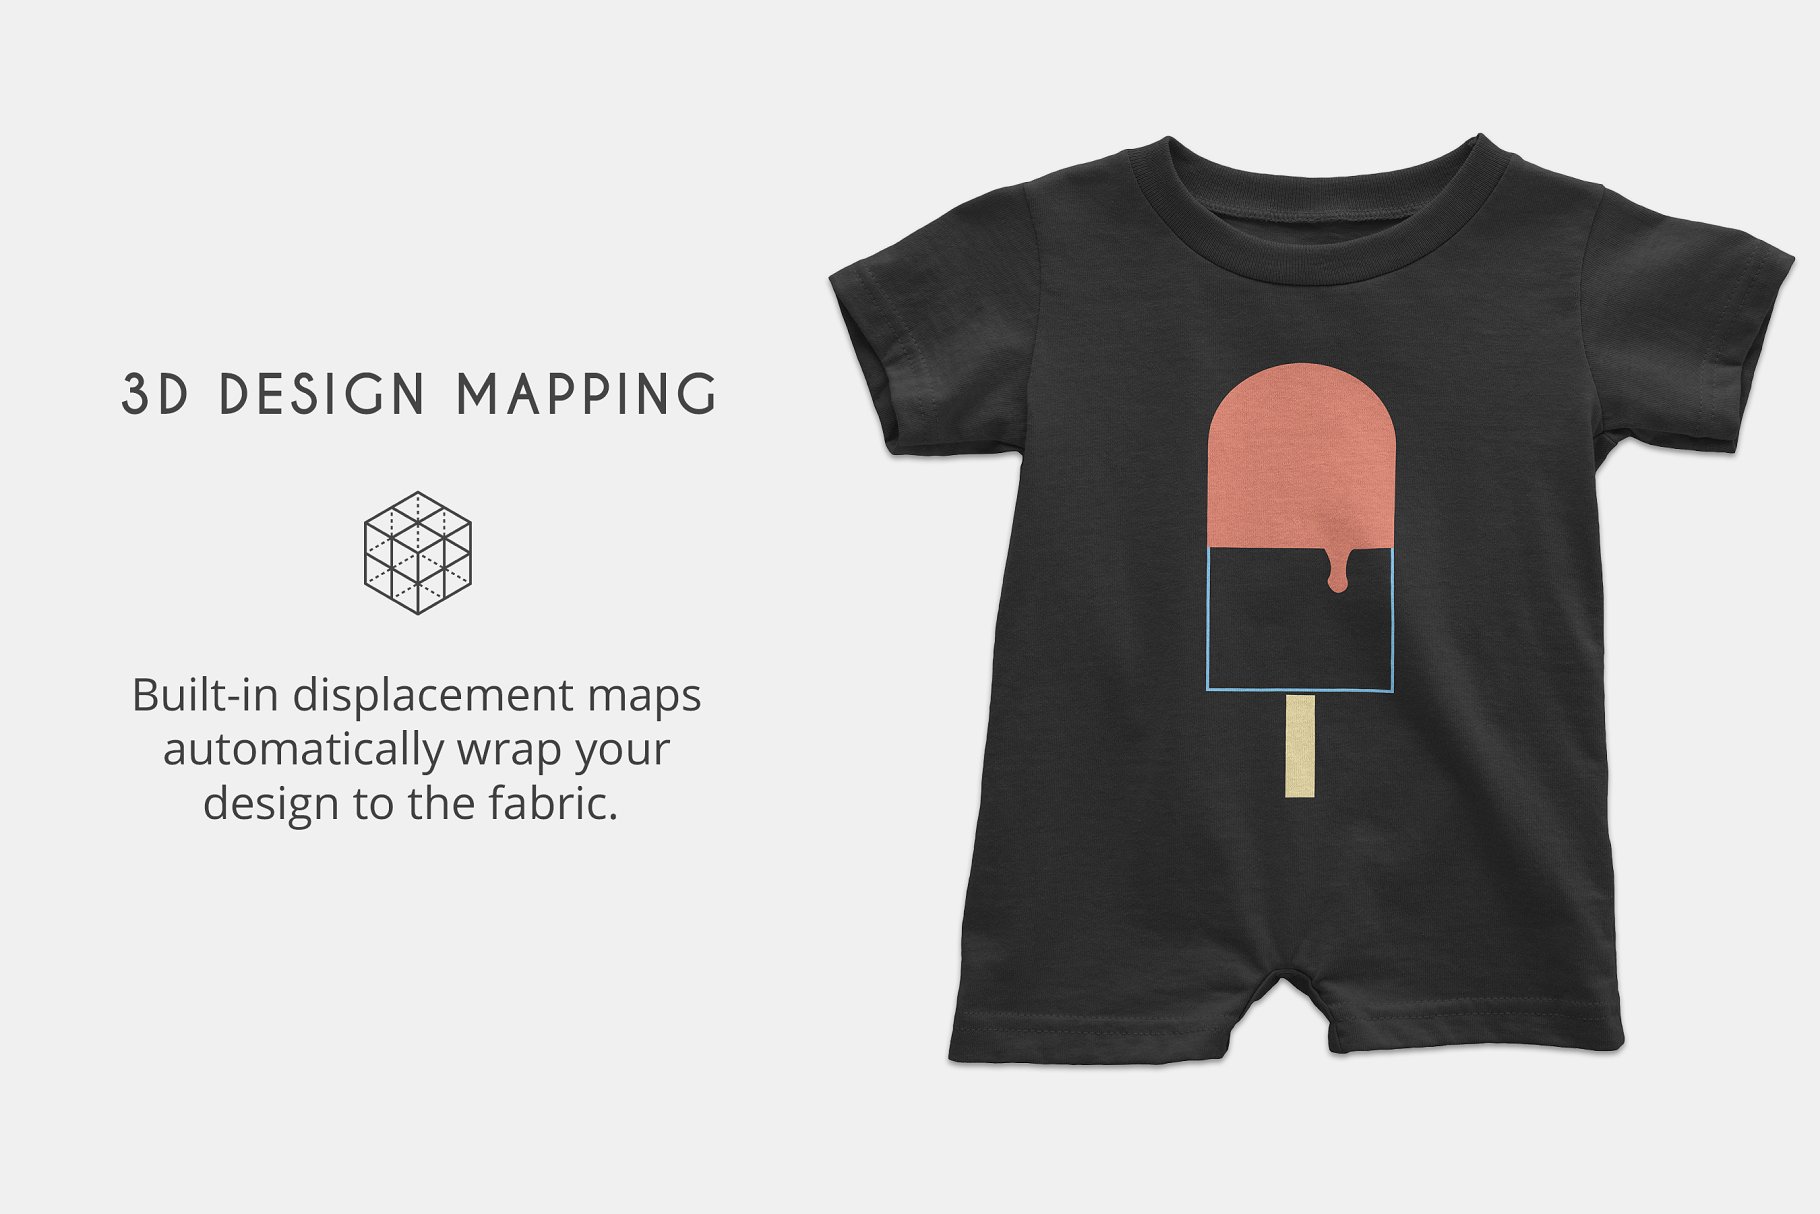 婴儿连体短袖T恤样机模板 Infant Tee Romper Mockups插图(1)